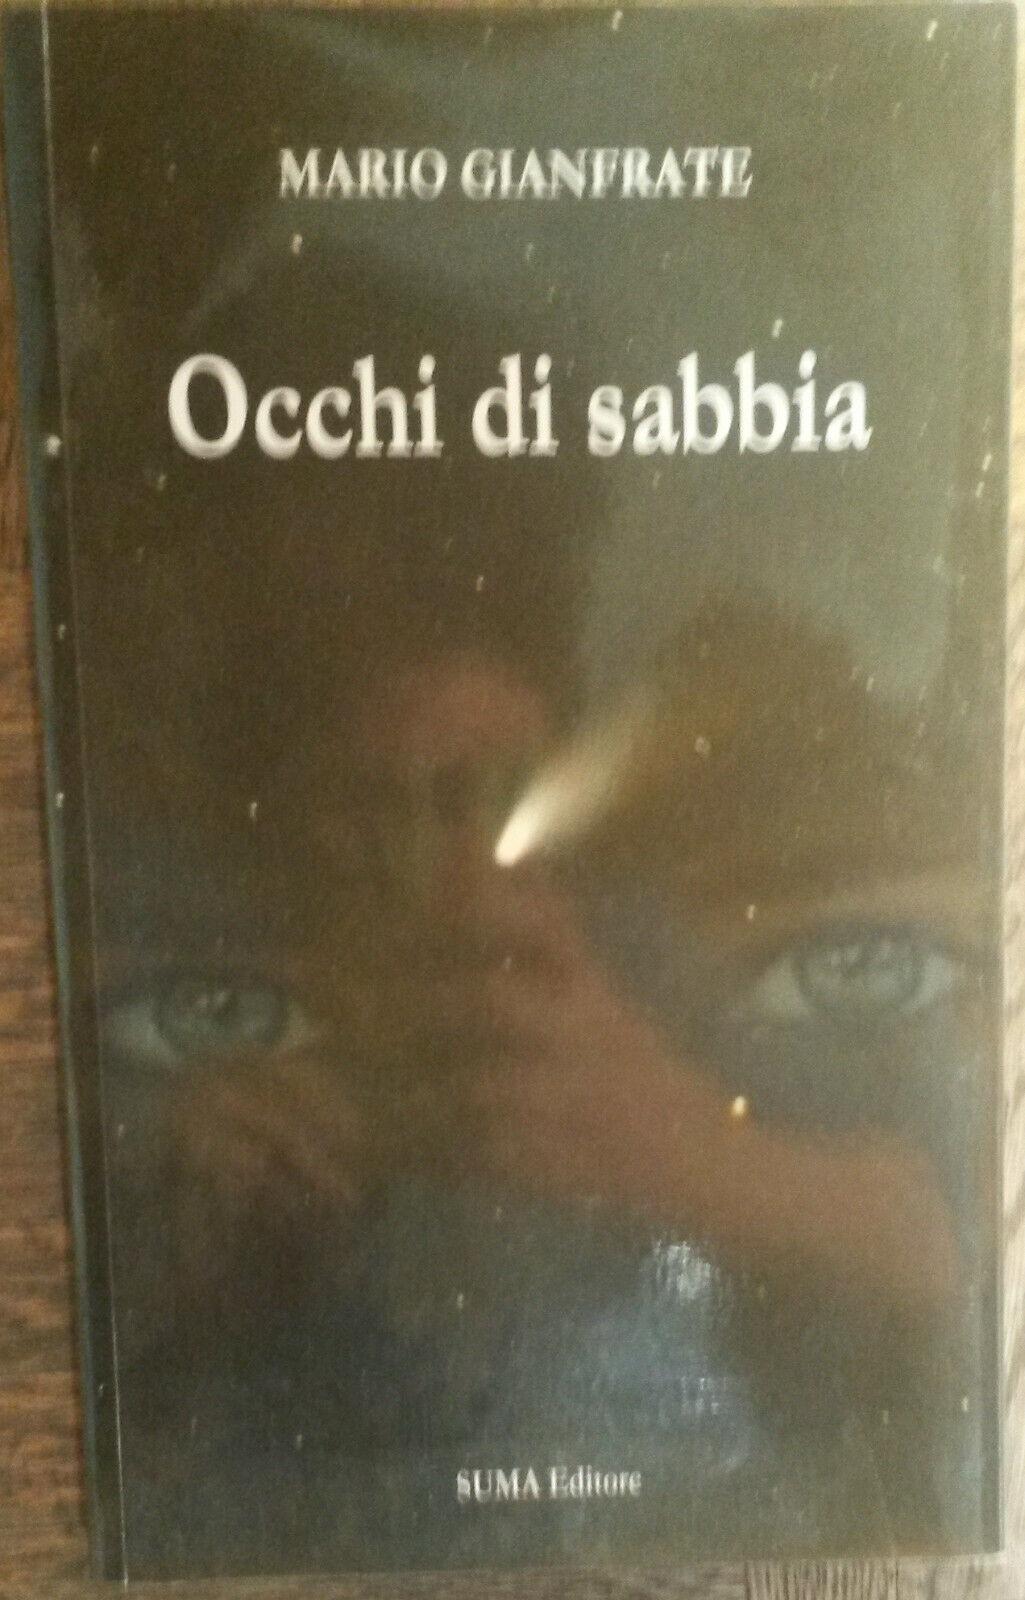 Occhi di sabbia - Mario Gianfrate - SUMA Editore,2010 - R